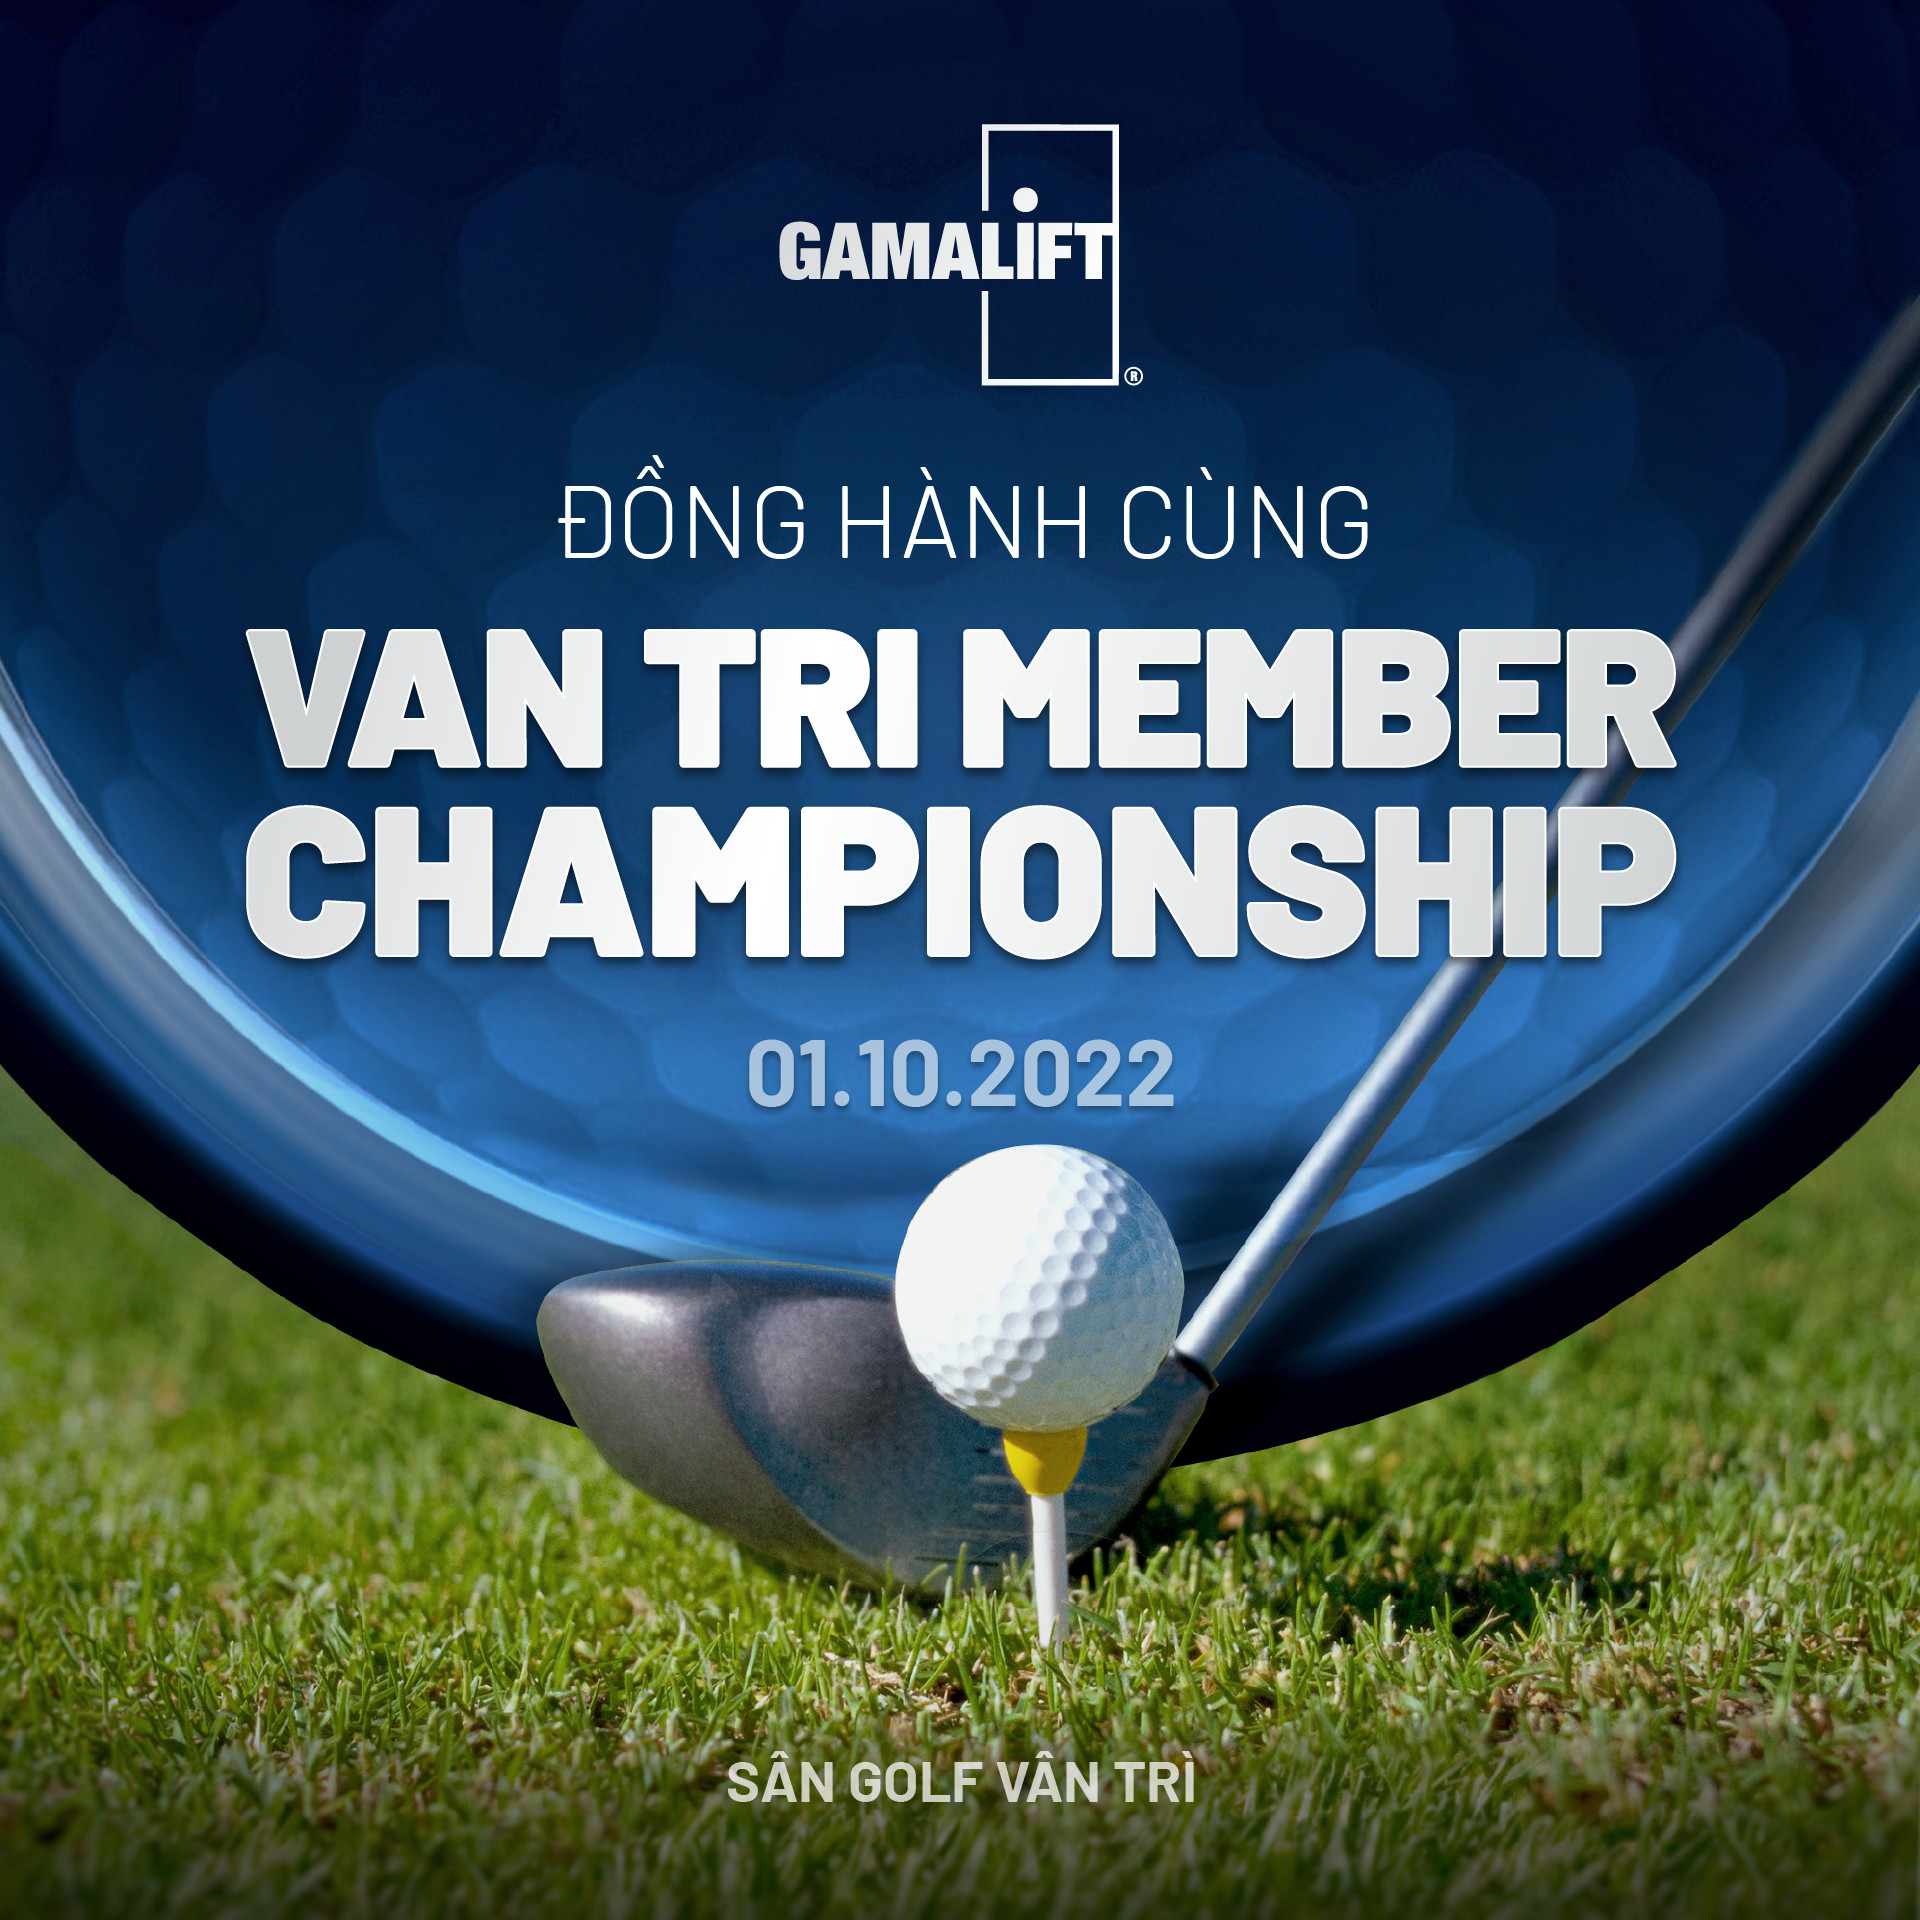 GamaLift tài trợ Giải đấu “Van Tri Member Championship” 2022 (7)